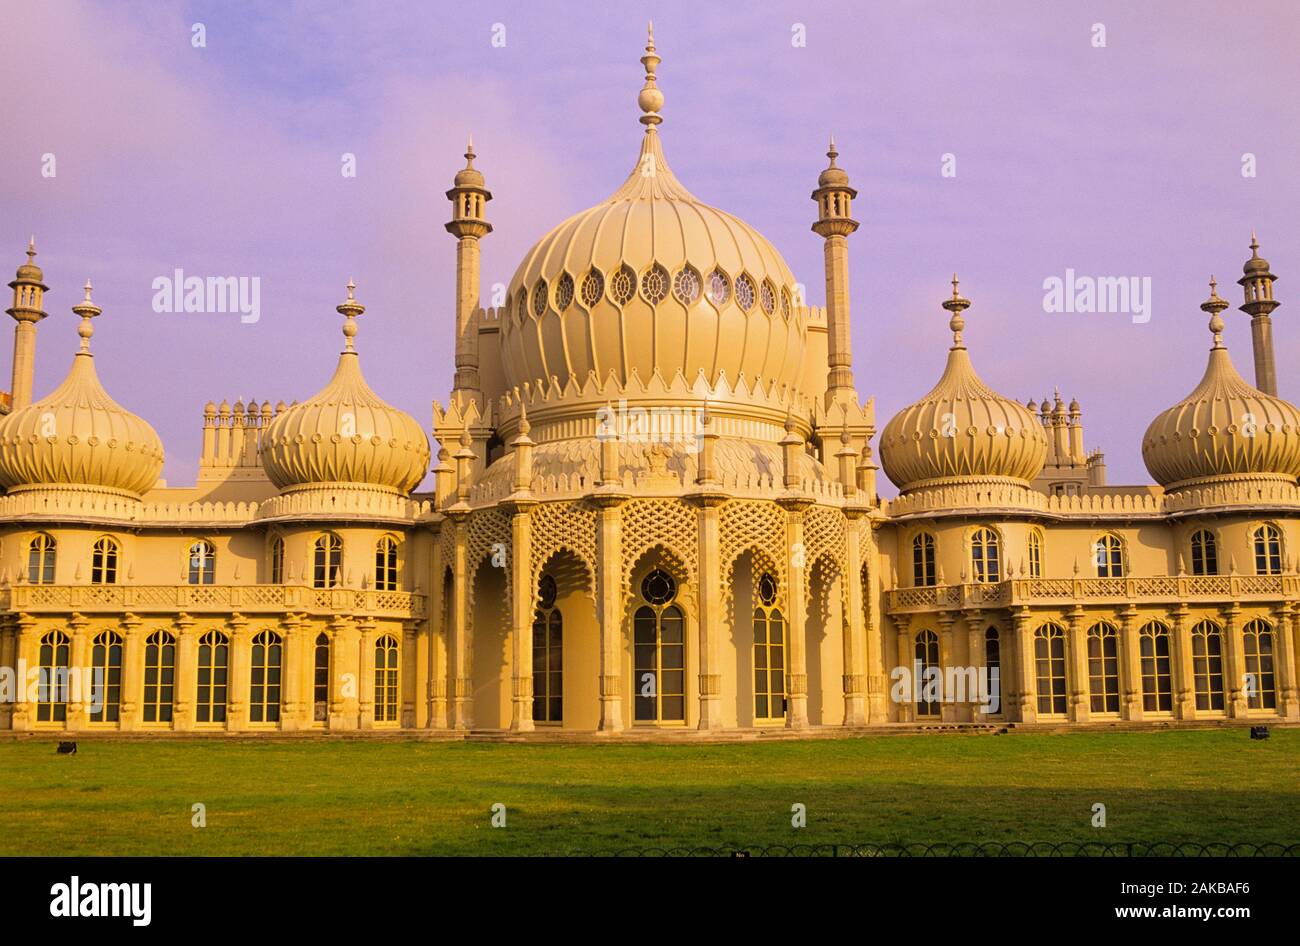 Avis de Royal Pavilion, Brighton, England, UK Banque D'Images